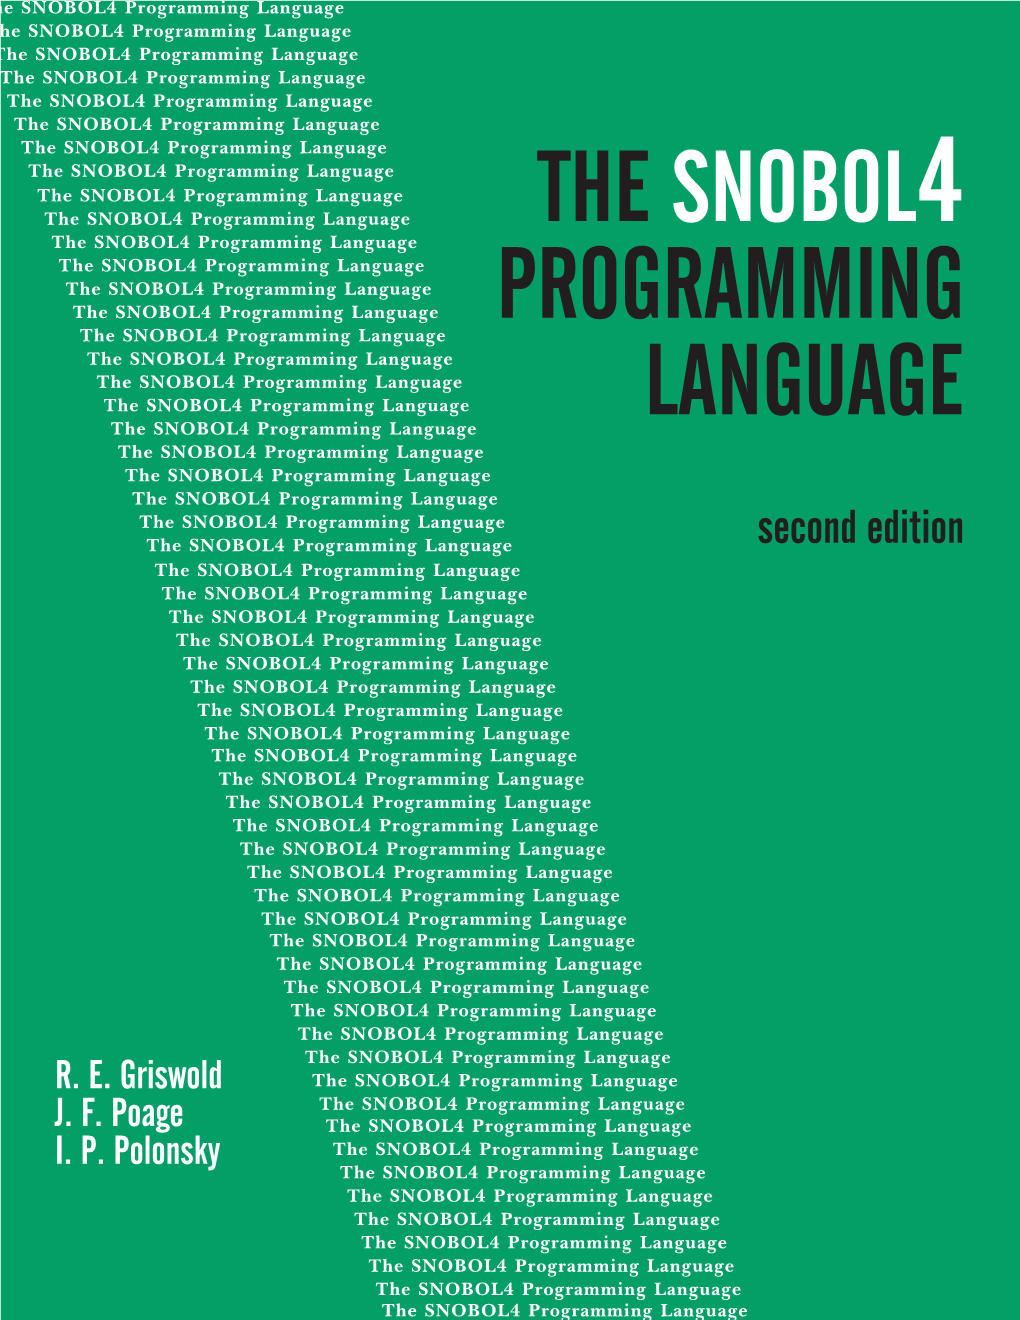 The Snobol4 Programming Language